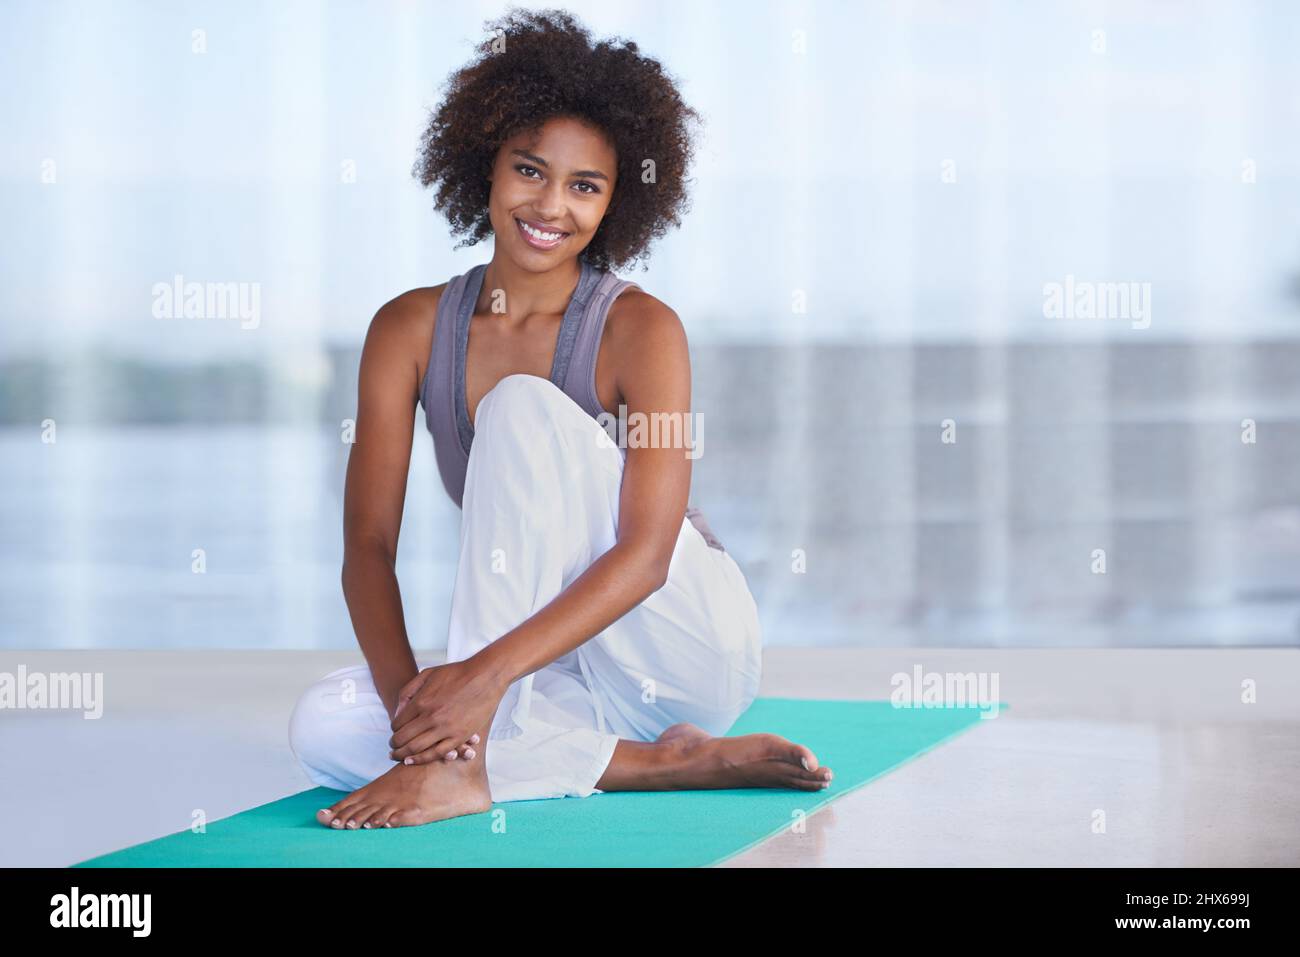 Übung lässt mich lächeln. Aufnahme einer attraktiven jungen Frau, die auf einer Trainingsmatte sitzt. Stockfoto